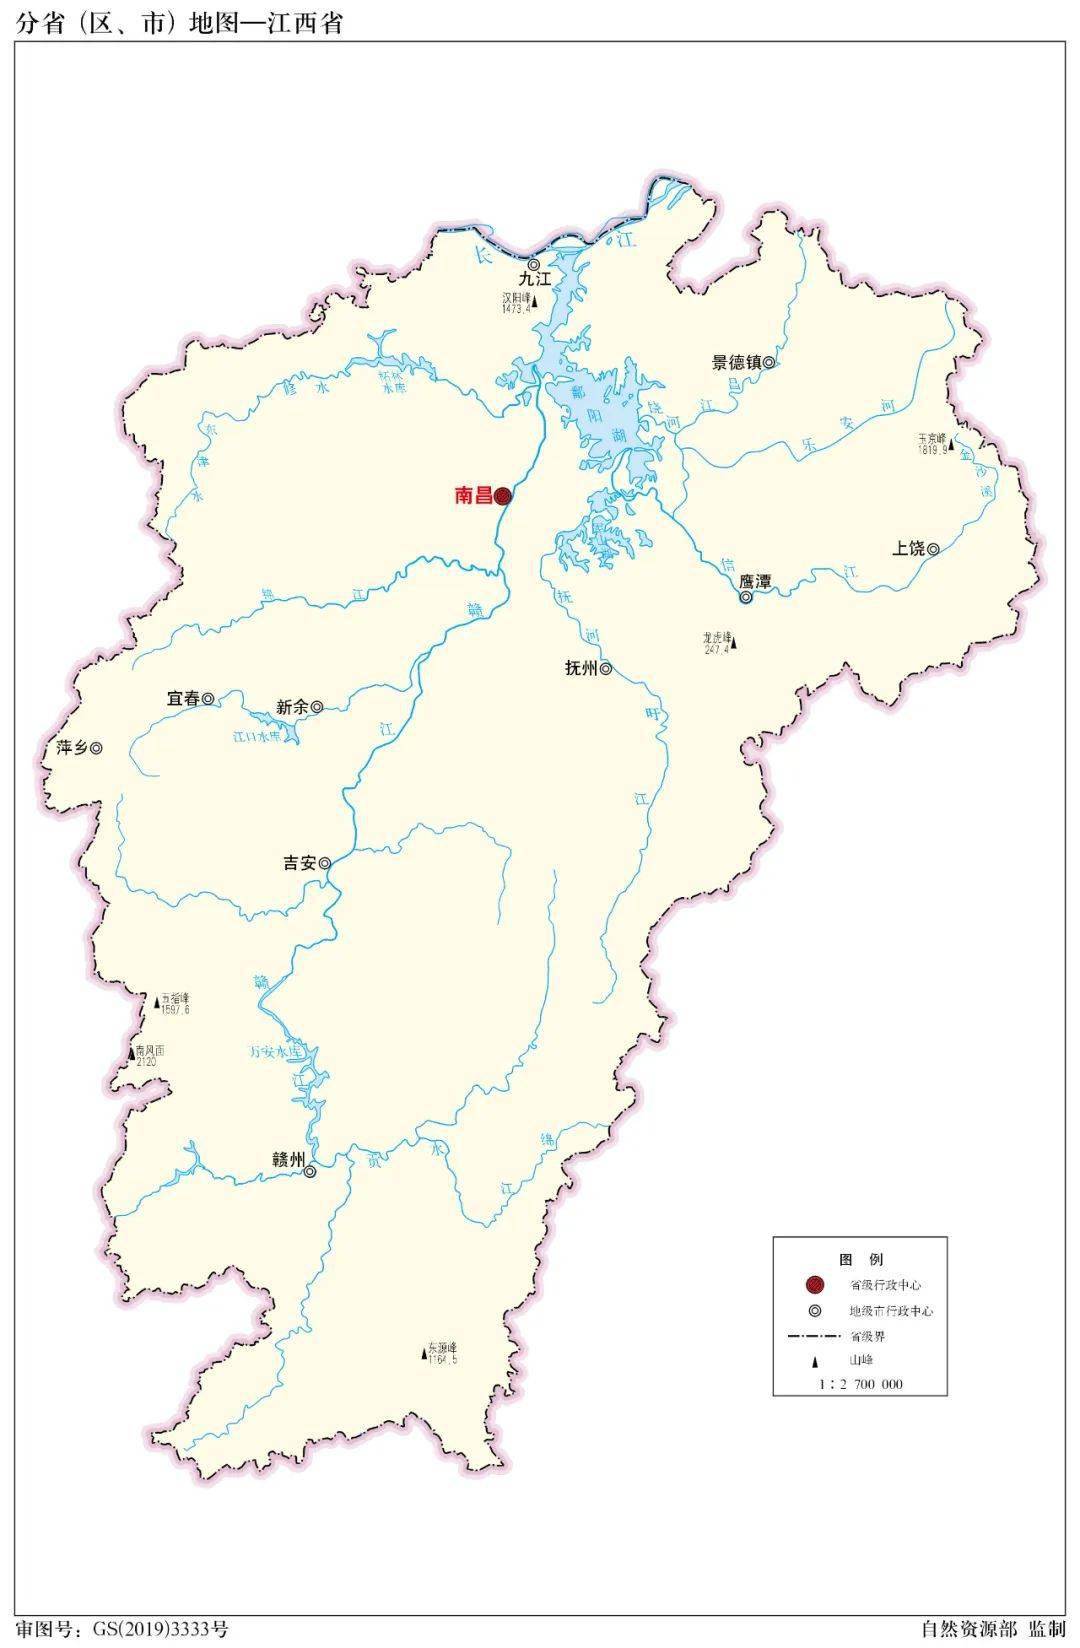 将全套河流水系地图分享给大家:中国境内主要有七大水系,从北